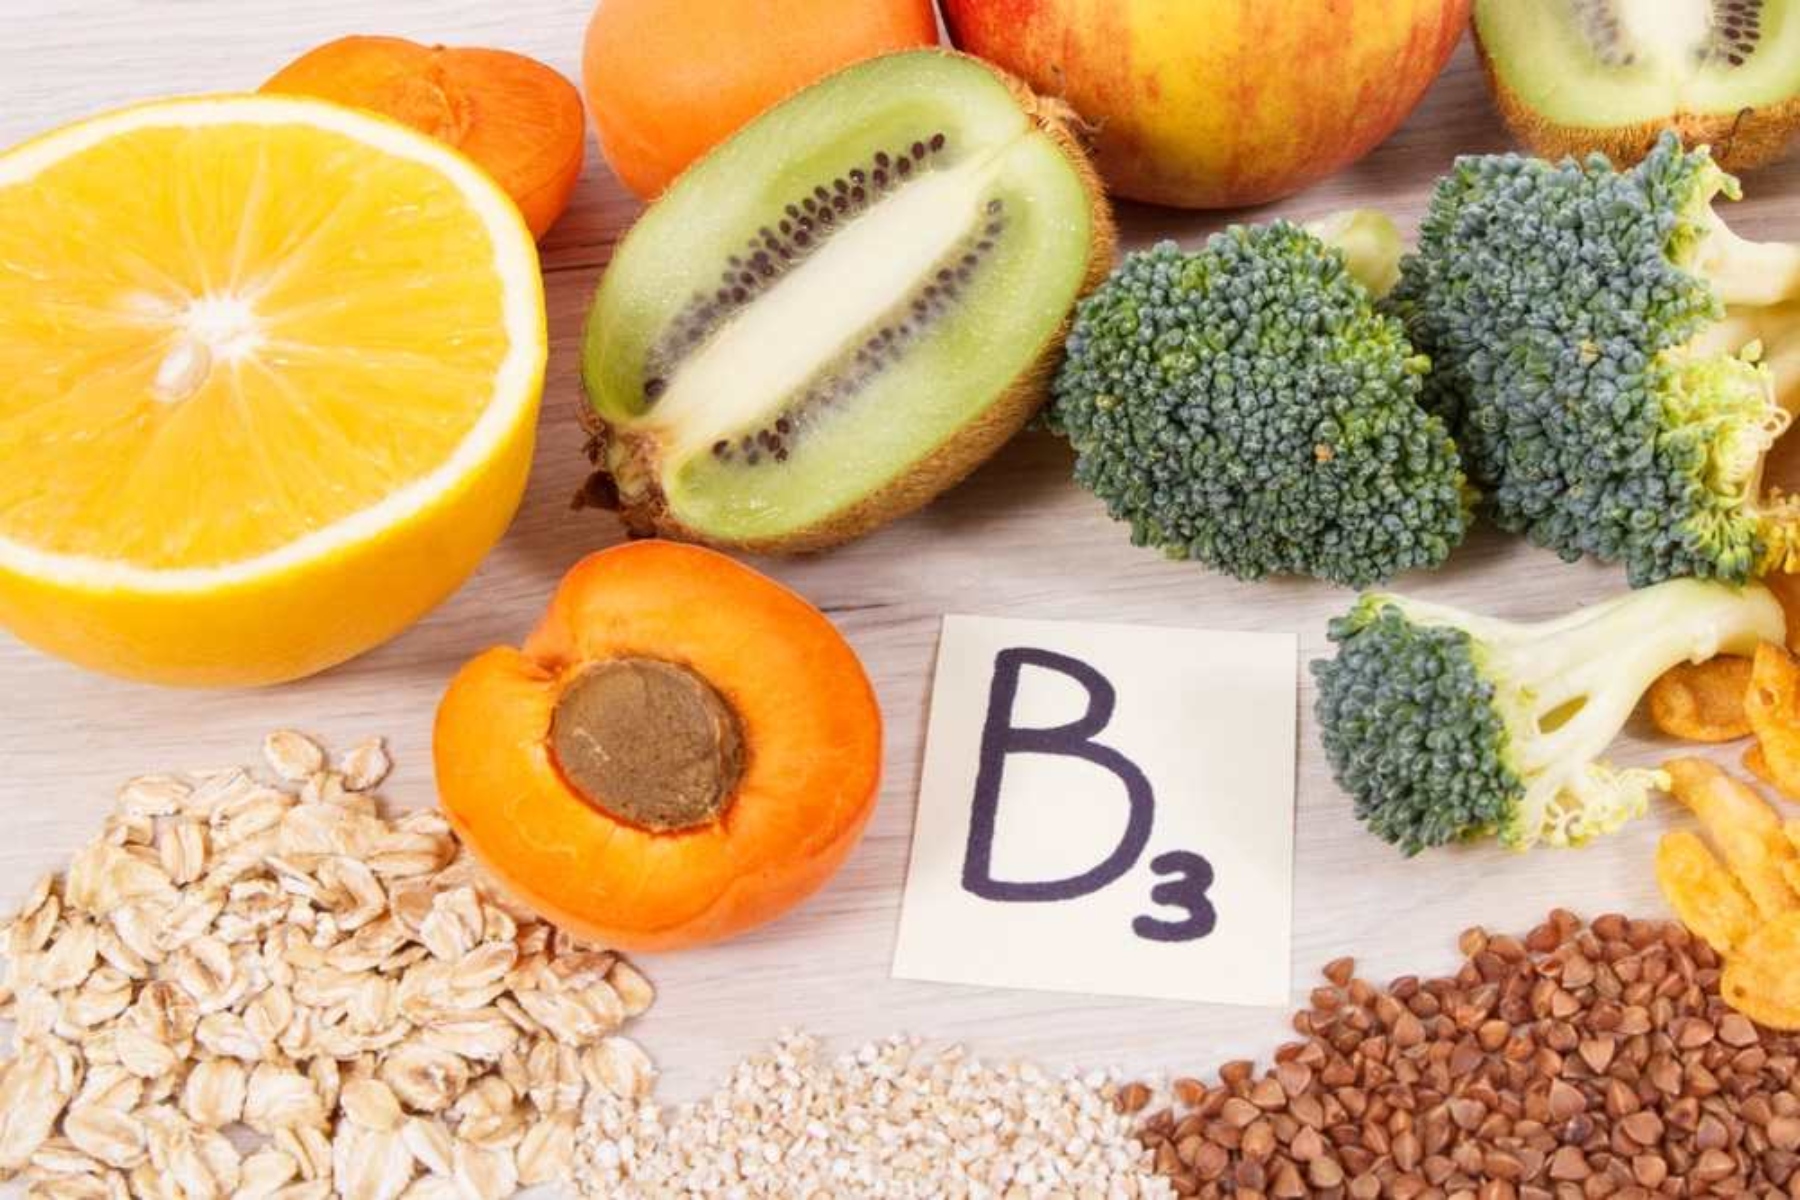 Βιταμίνη Β3: 5 τρόφιμα που μπορούν να σας δώσουν τη βιταμίνη Β3 που χρειάζεστε